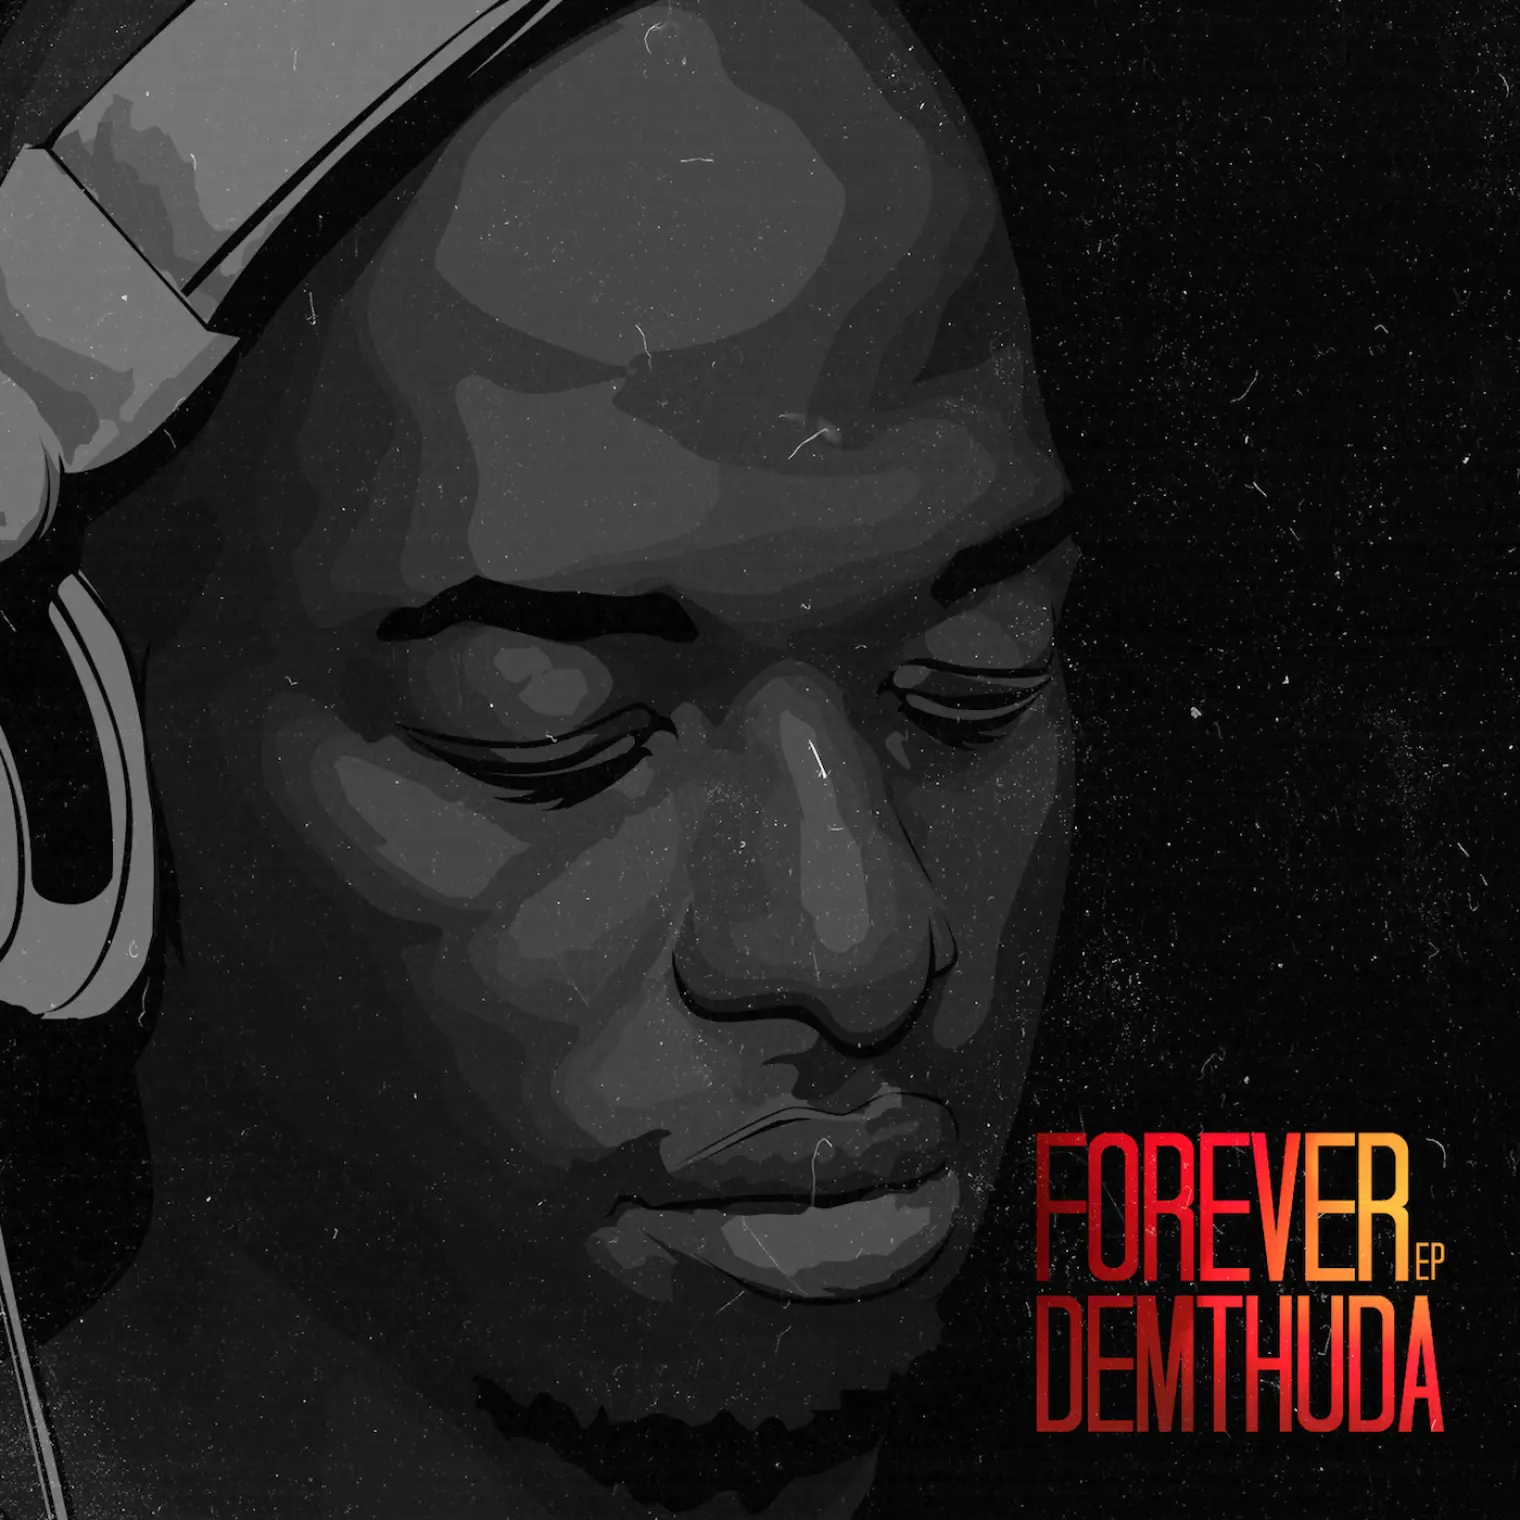 Forever EP -  DeMthuda 